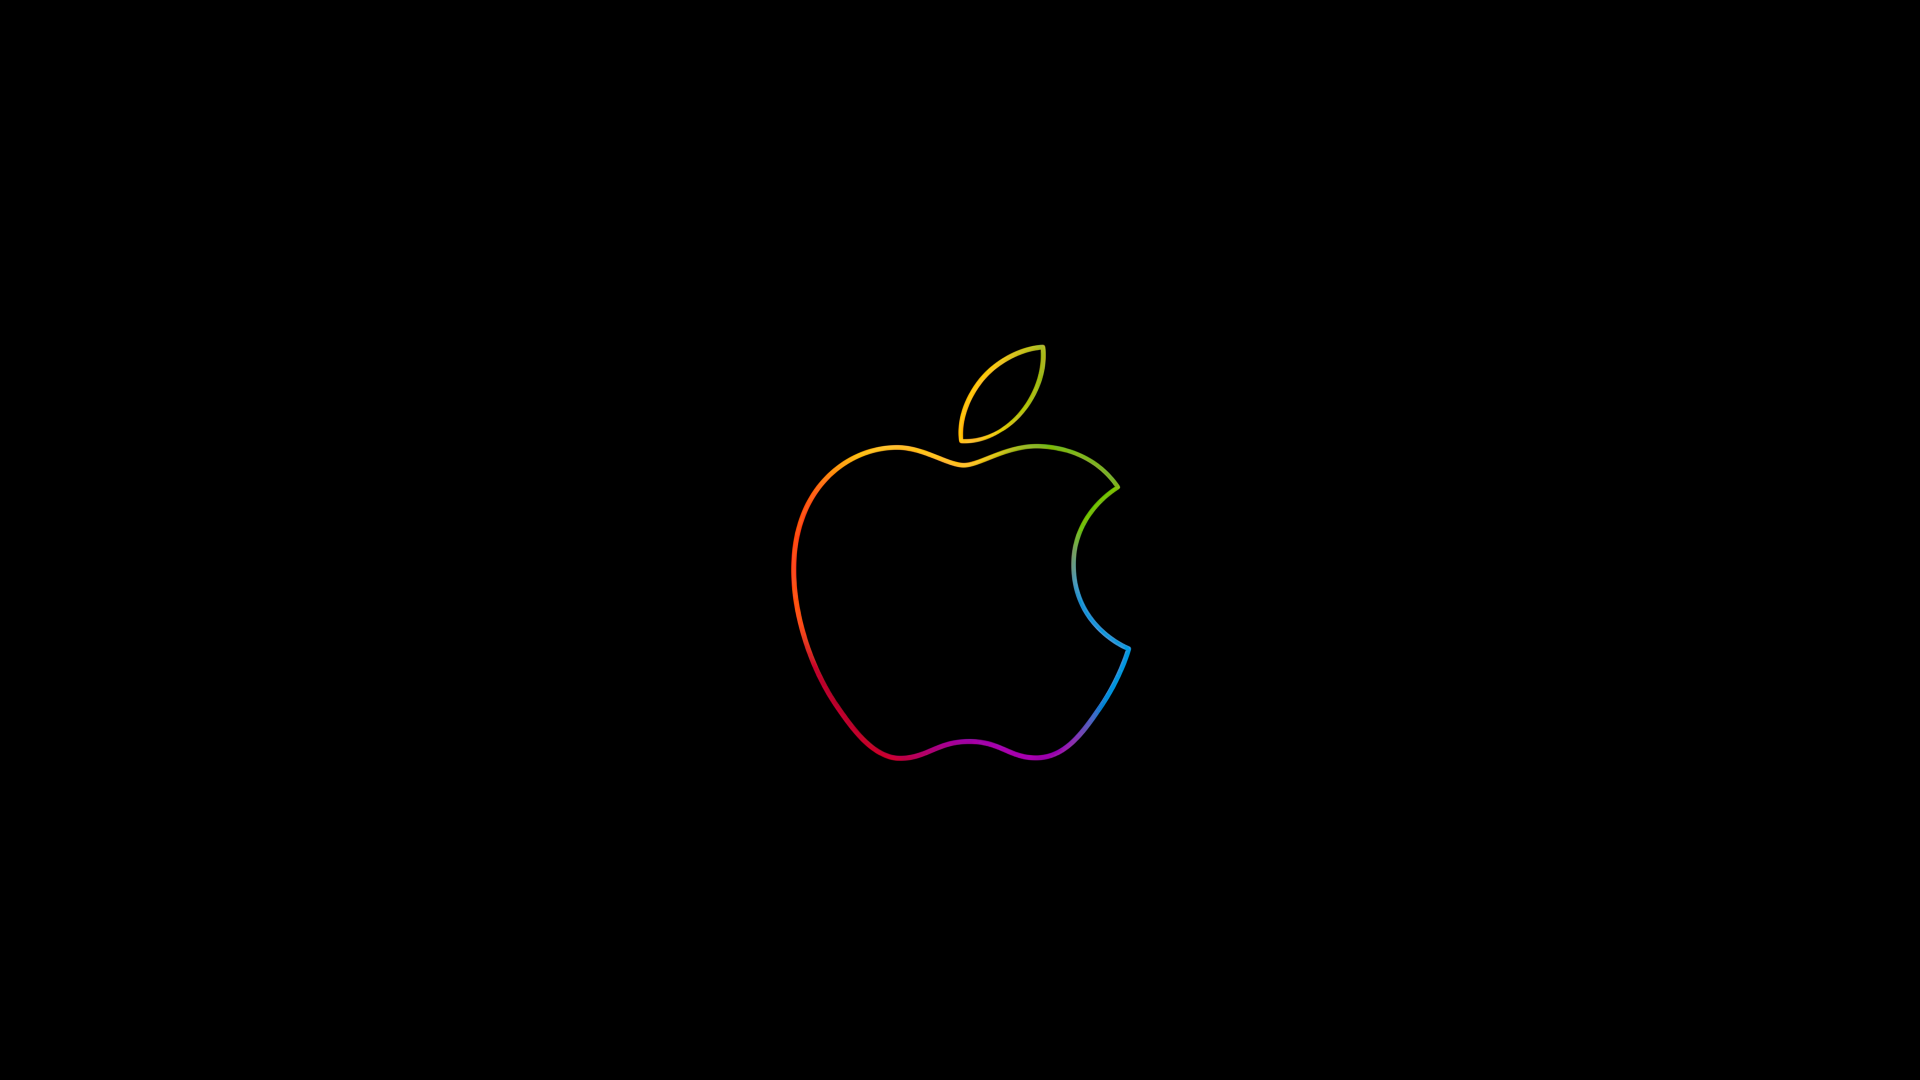 white apple logo wallpaper